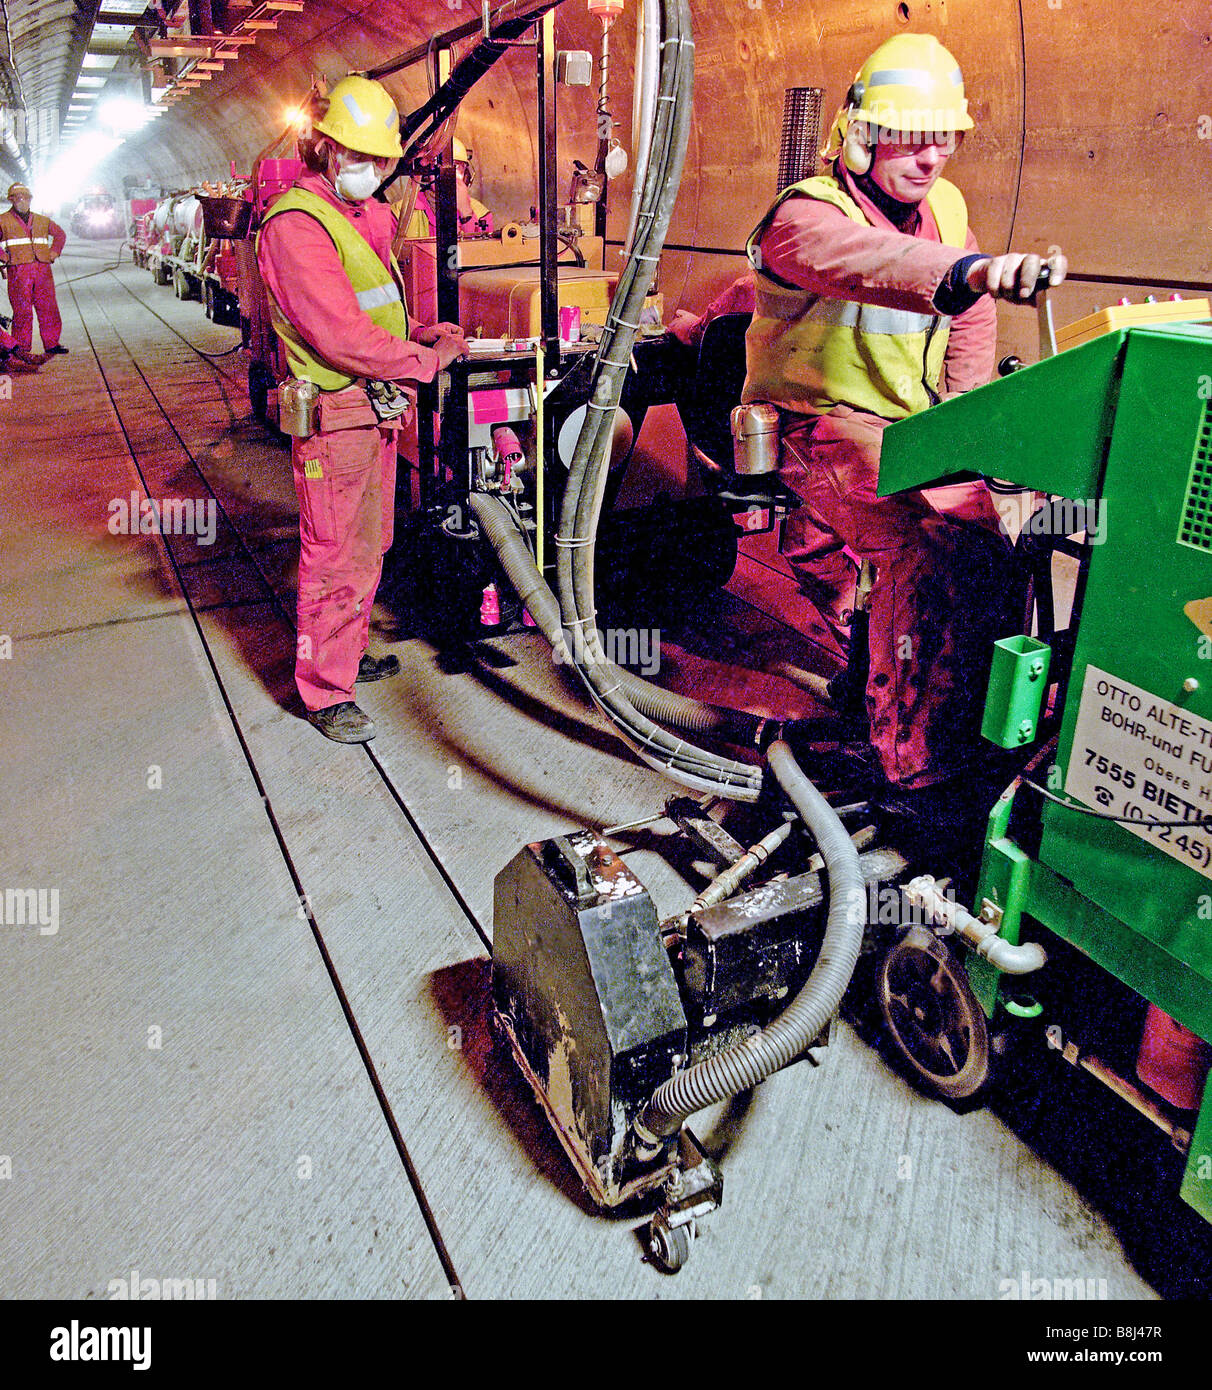 Schneiden Nuten im Betonboden des Ärmelkanal-Tunnels Dienst Tunnels vor dem Einbau Anleitung Drähte für die STTS Fahrzeuge. Stockfoto